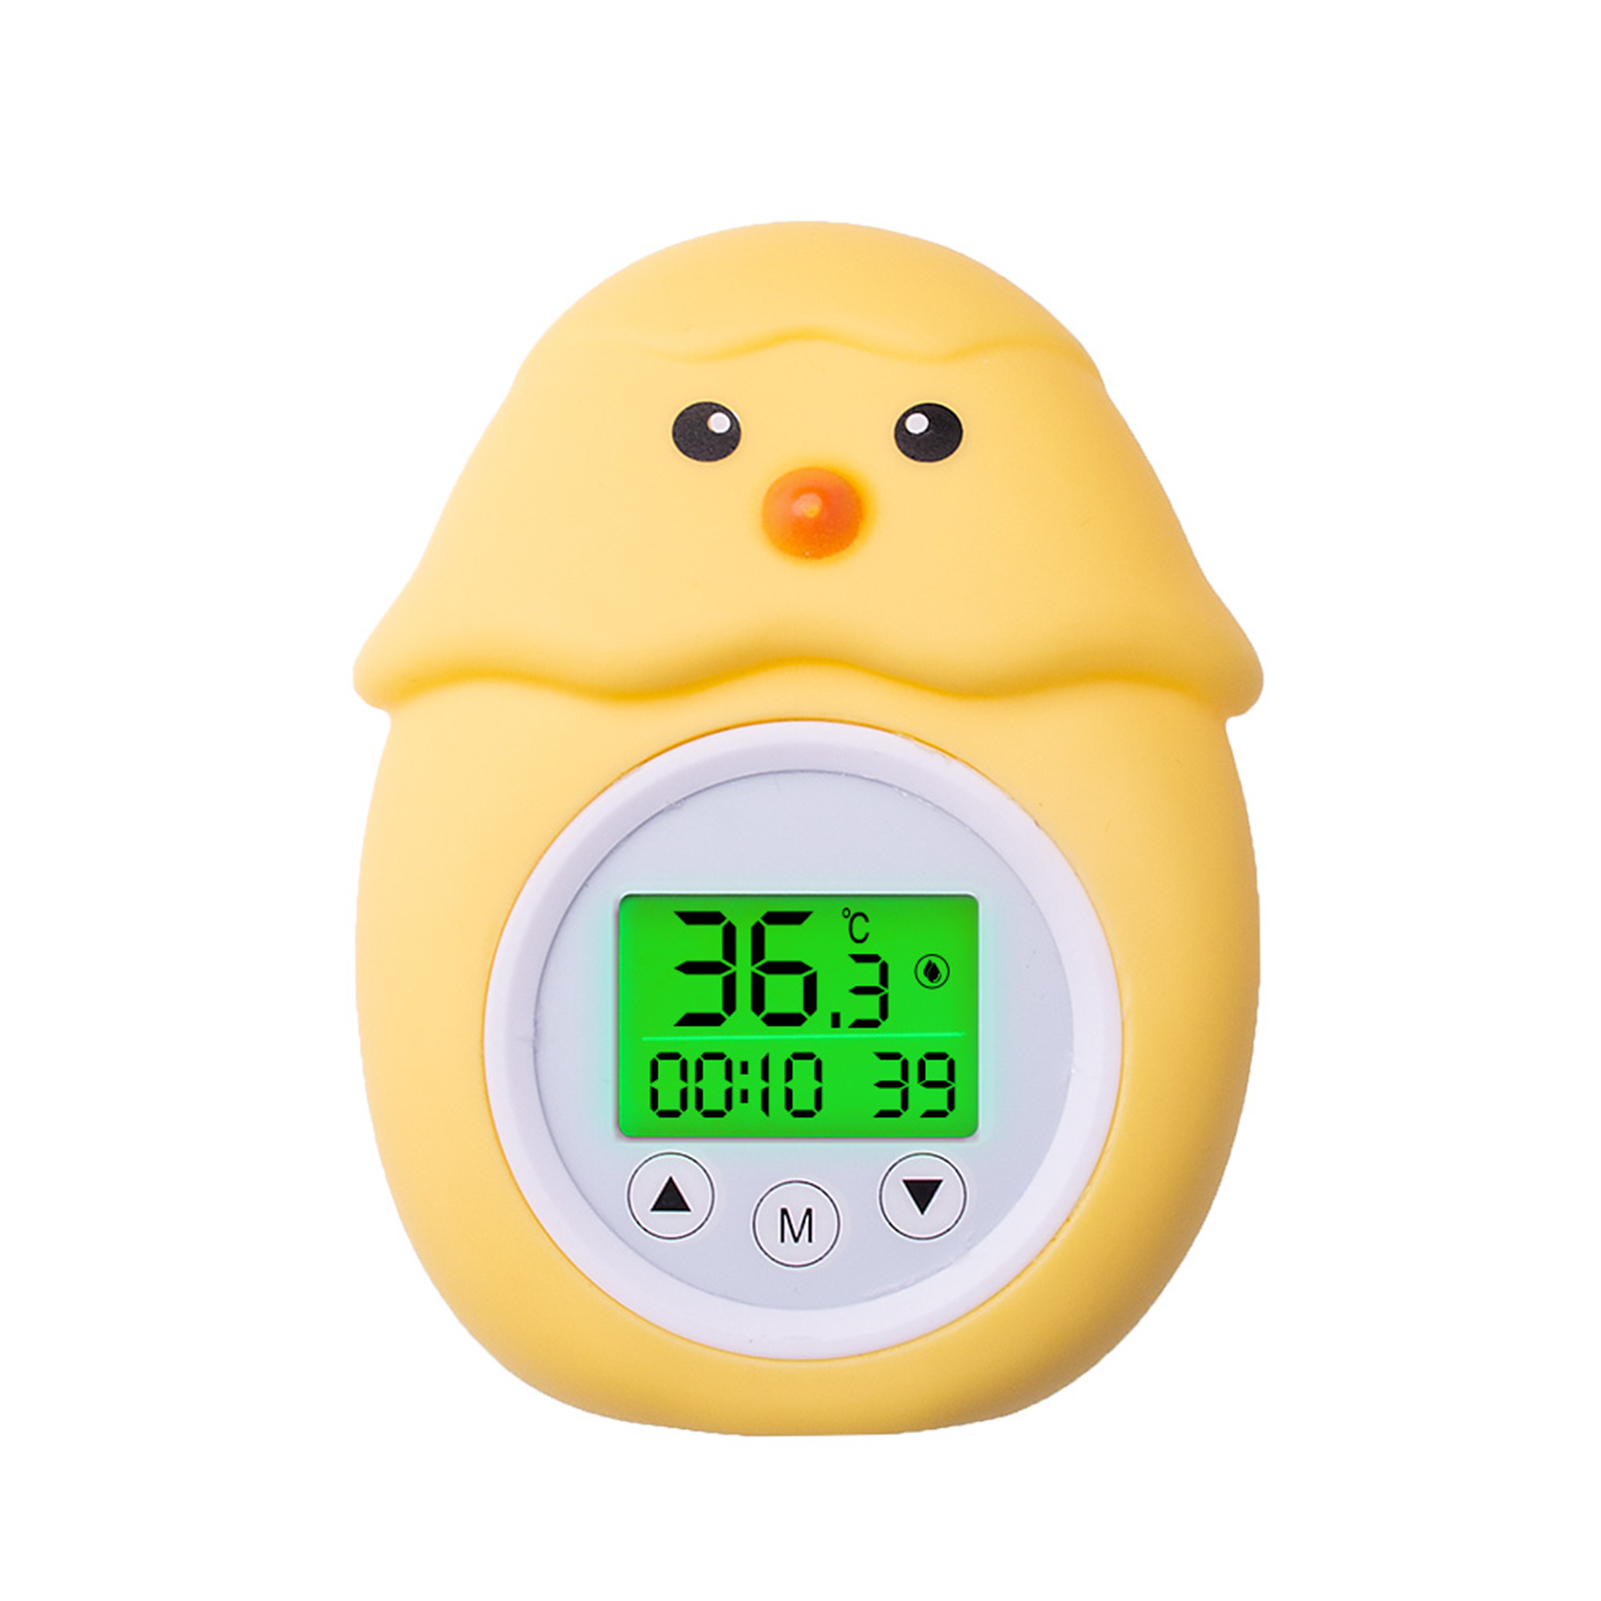 Küchenartikel & Haushaltsartikel Haushaltsgeräte Thermometer Badethermometer Badethermometer mit dreifarbiger, 